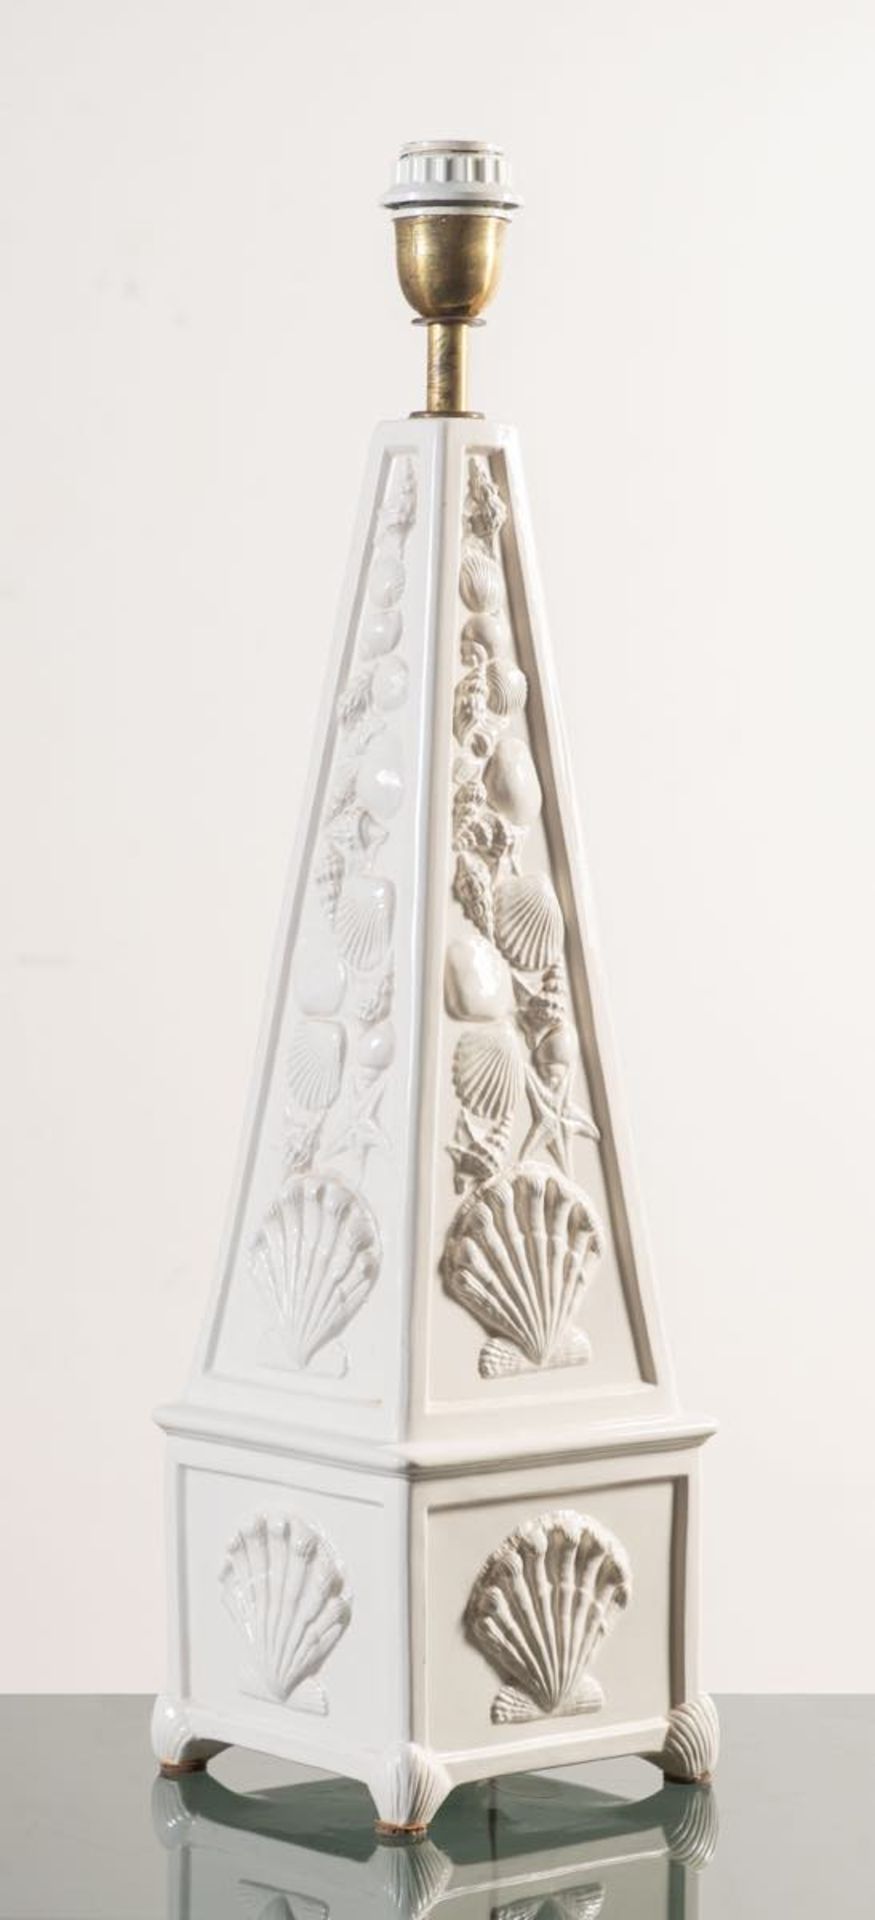 Lampada in ceramica a foggia di obelisco, Italia, Anni ‘70.Decorazione a conchiglie in rilievo su - Bild 2 aus 2